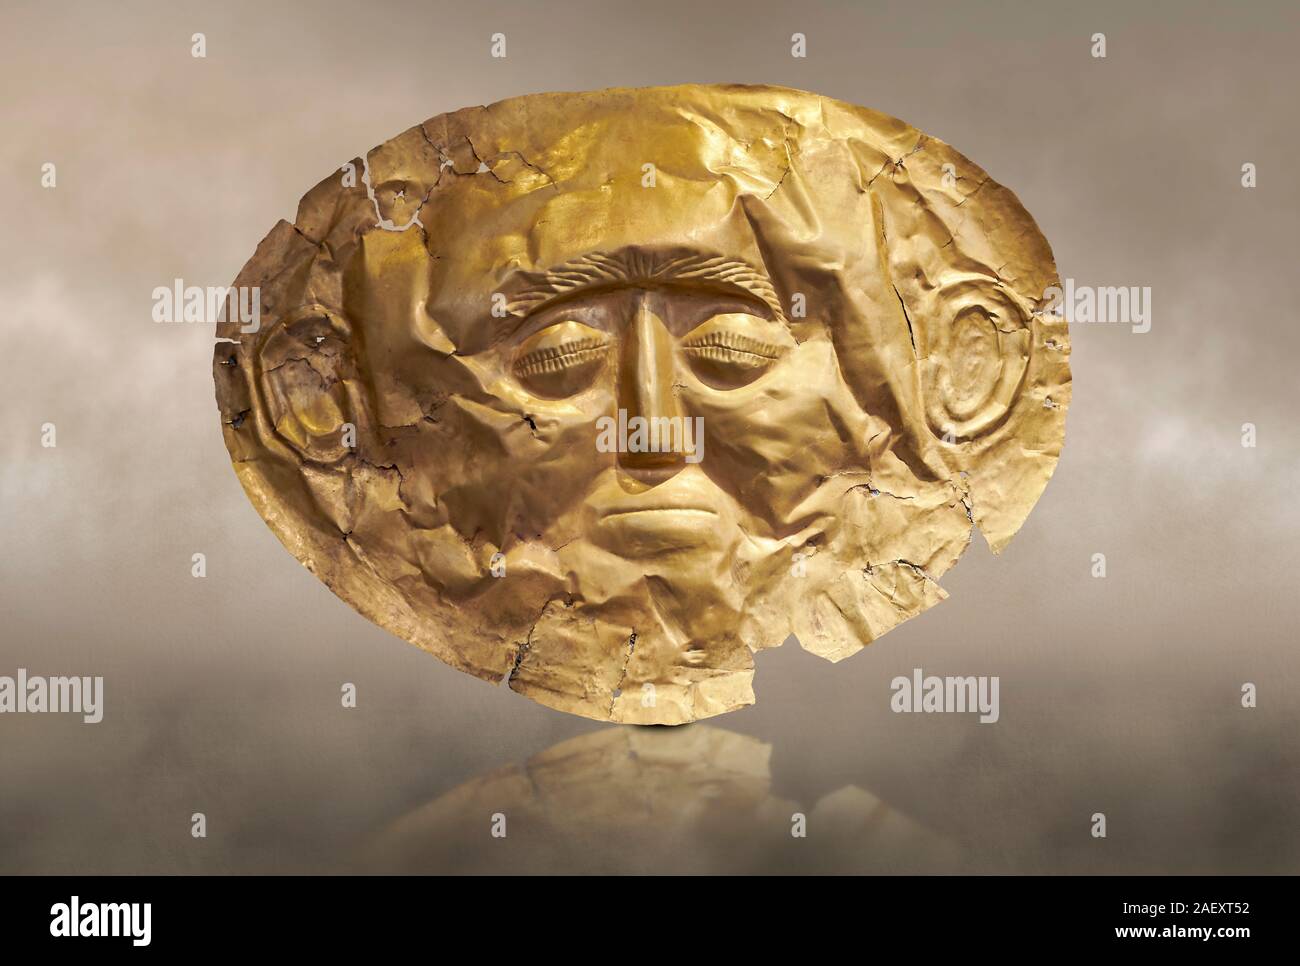 Mykenische goldene Totenmaske, Grab Kreislauf ein, Mykene, Griechenland. Archäologisches Nationalmuseum von Athen. Dieser Tod Maske ist typisch für die anderen Mykene Stockfoto